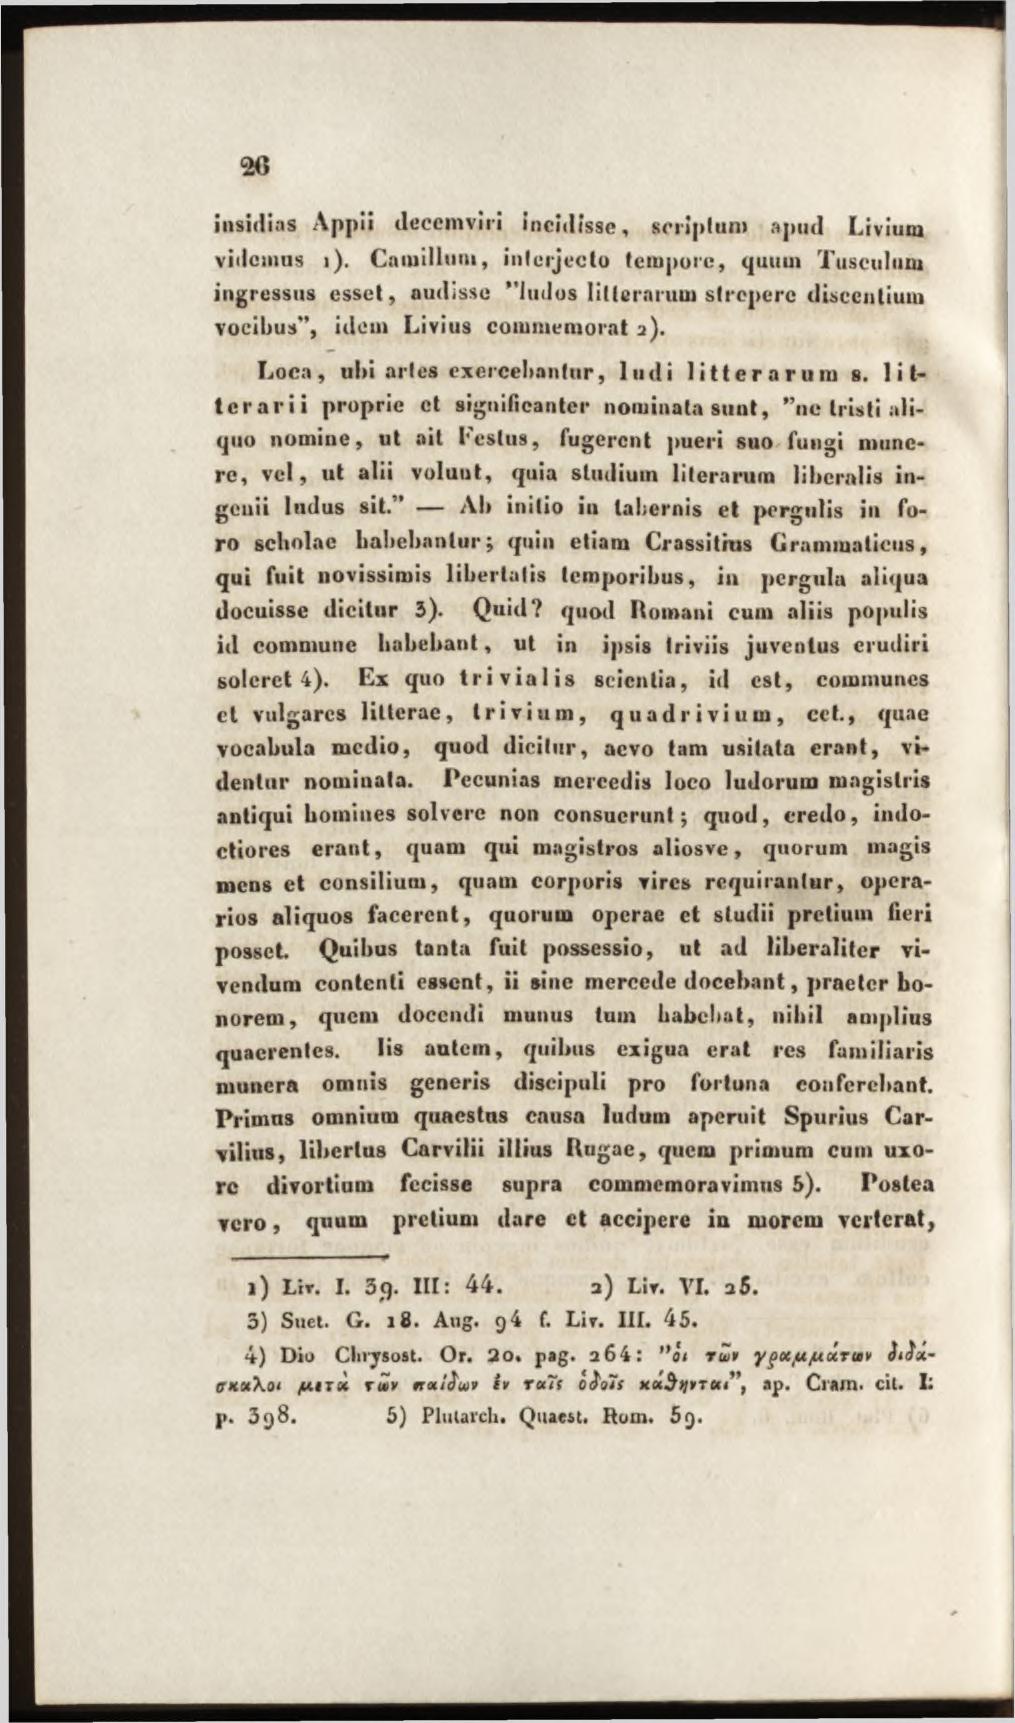 insidias Appii decemviri incidisse, scriptum apud Livium videmus i).